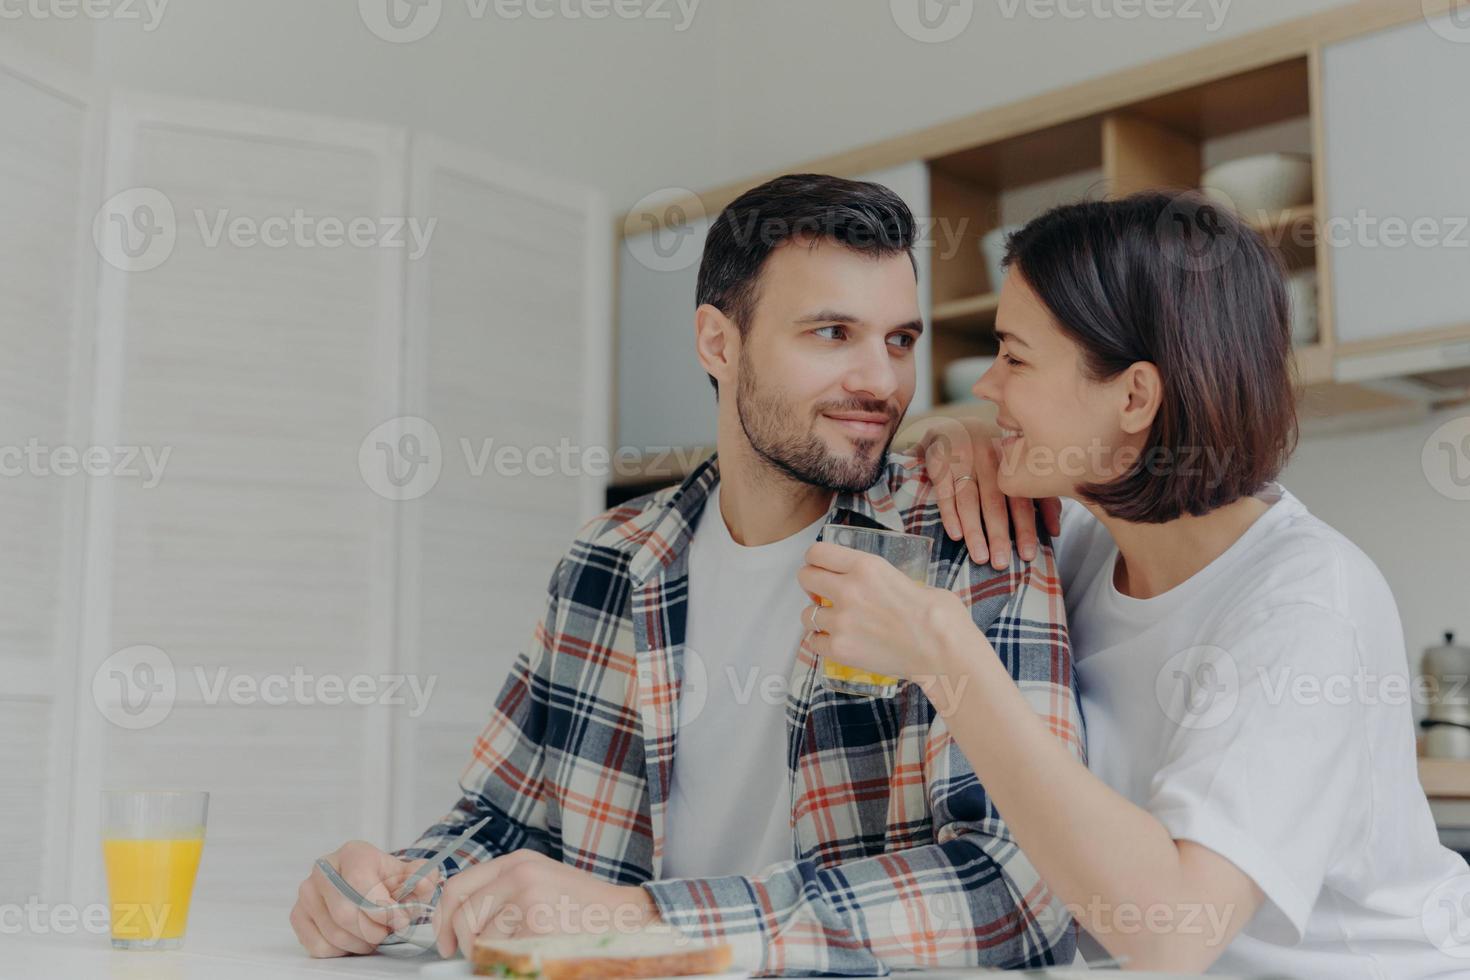 un joli couple se regarde avec amour, une femme tient un verre de jus, pose ensemble près de la table de la cuisine, discute agréablement pendant le petit-déjeuner, profite de l'atmosphère domestique. notion de famille heureuse photo